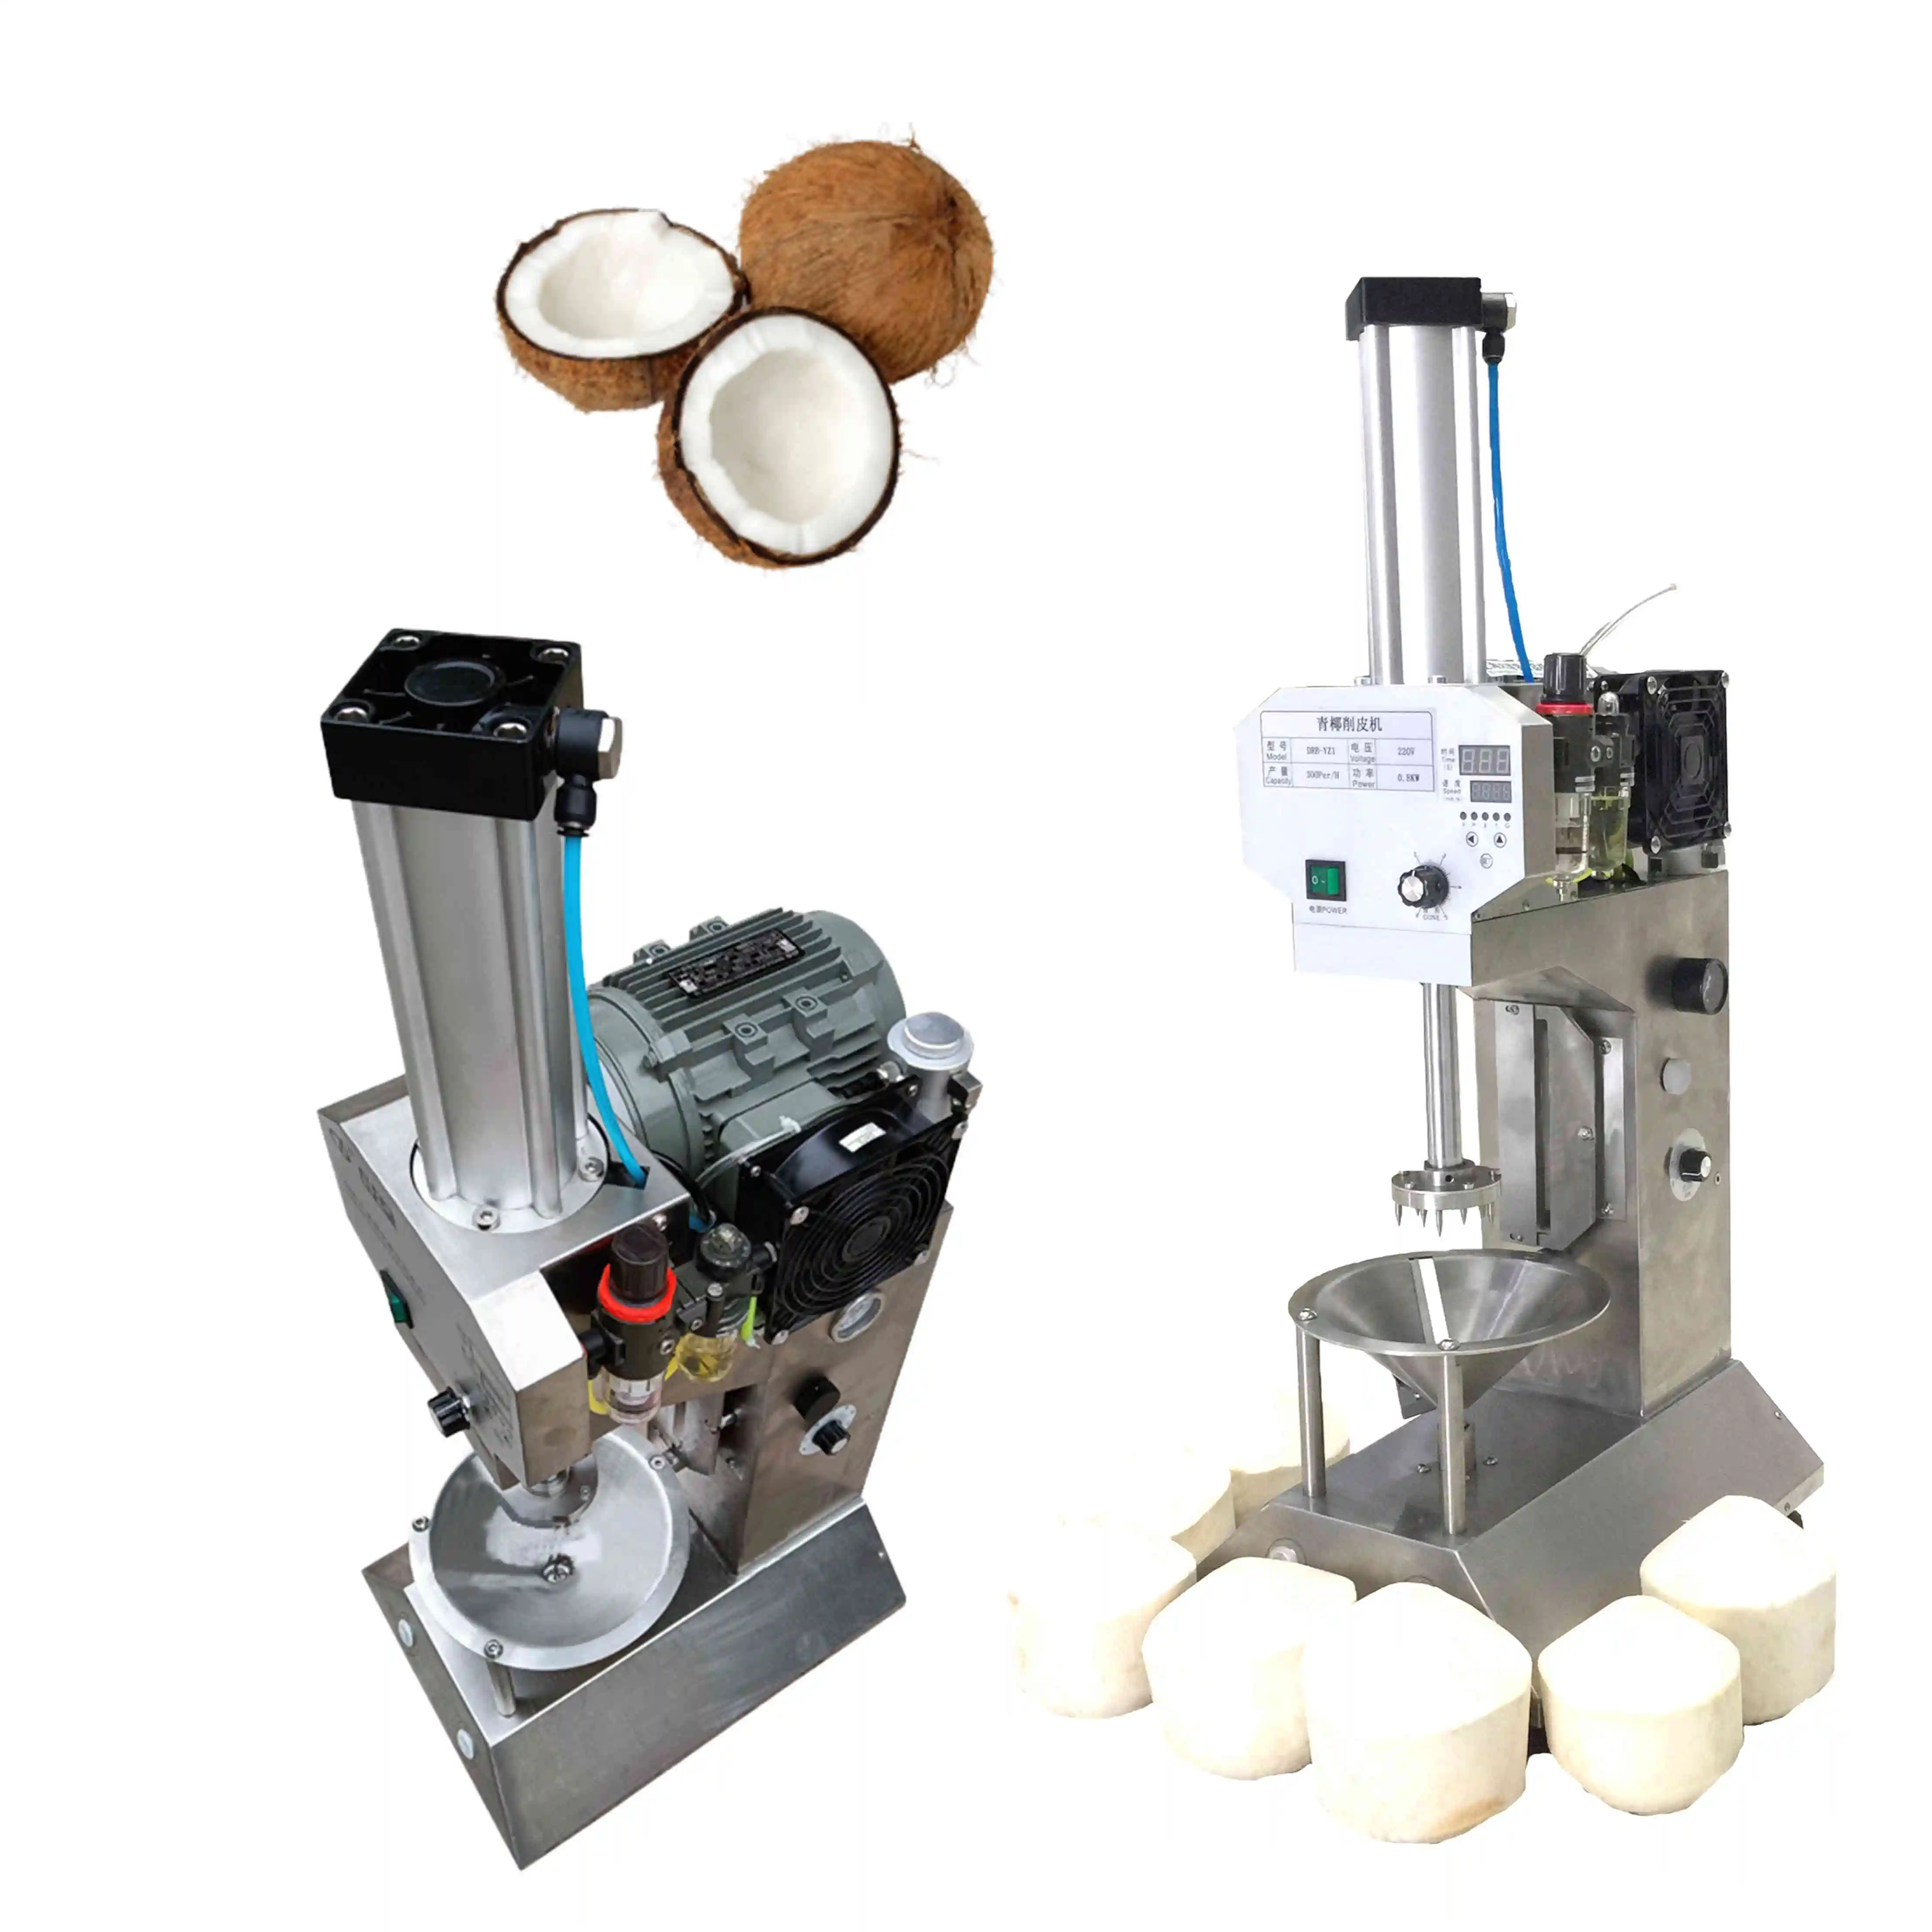 Automatische Groene Kokosschilmachine/Jonge Groene Kokosnoot Huidschraper Machine/Groene Kokosnoot Trimmen Schilmachine